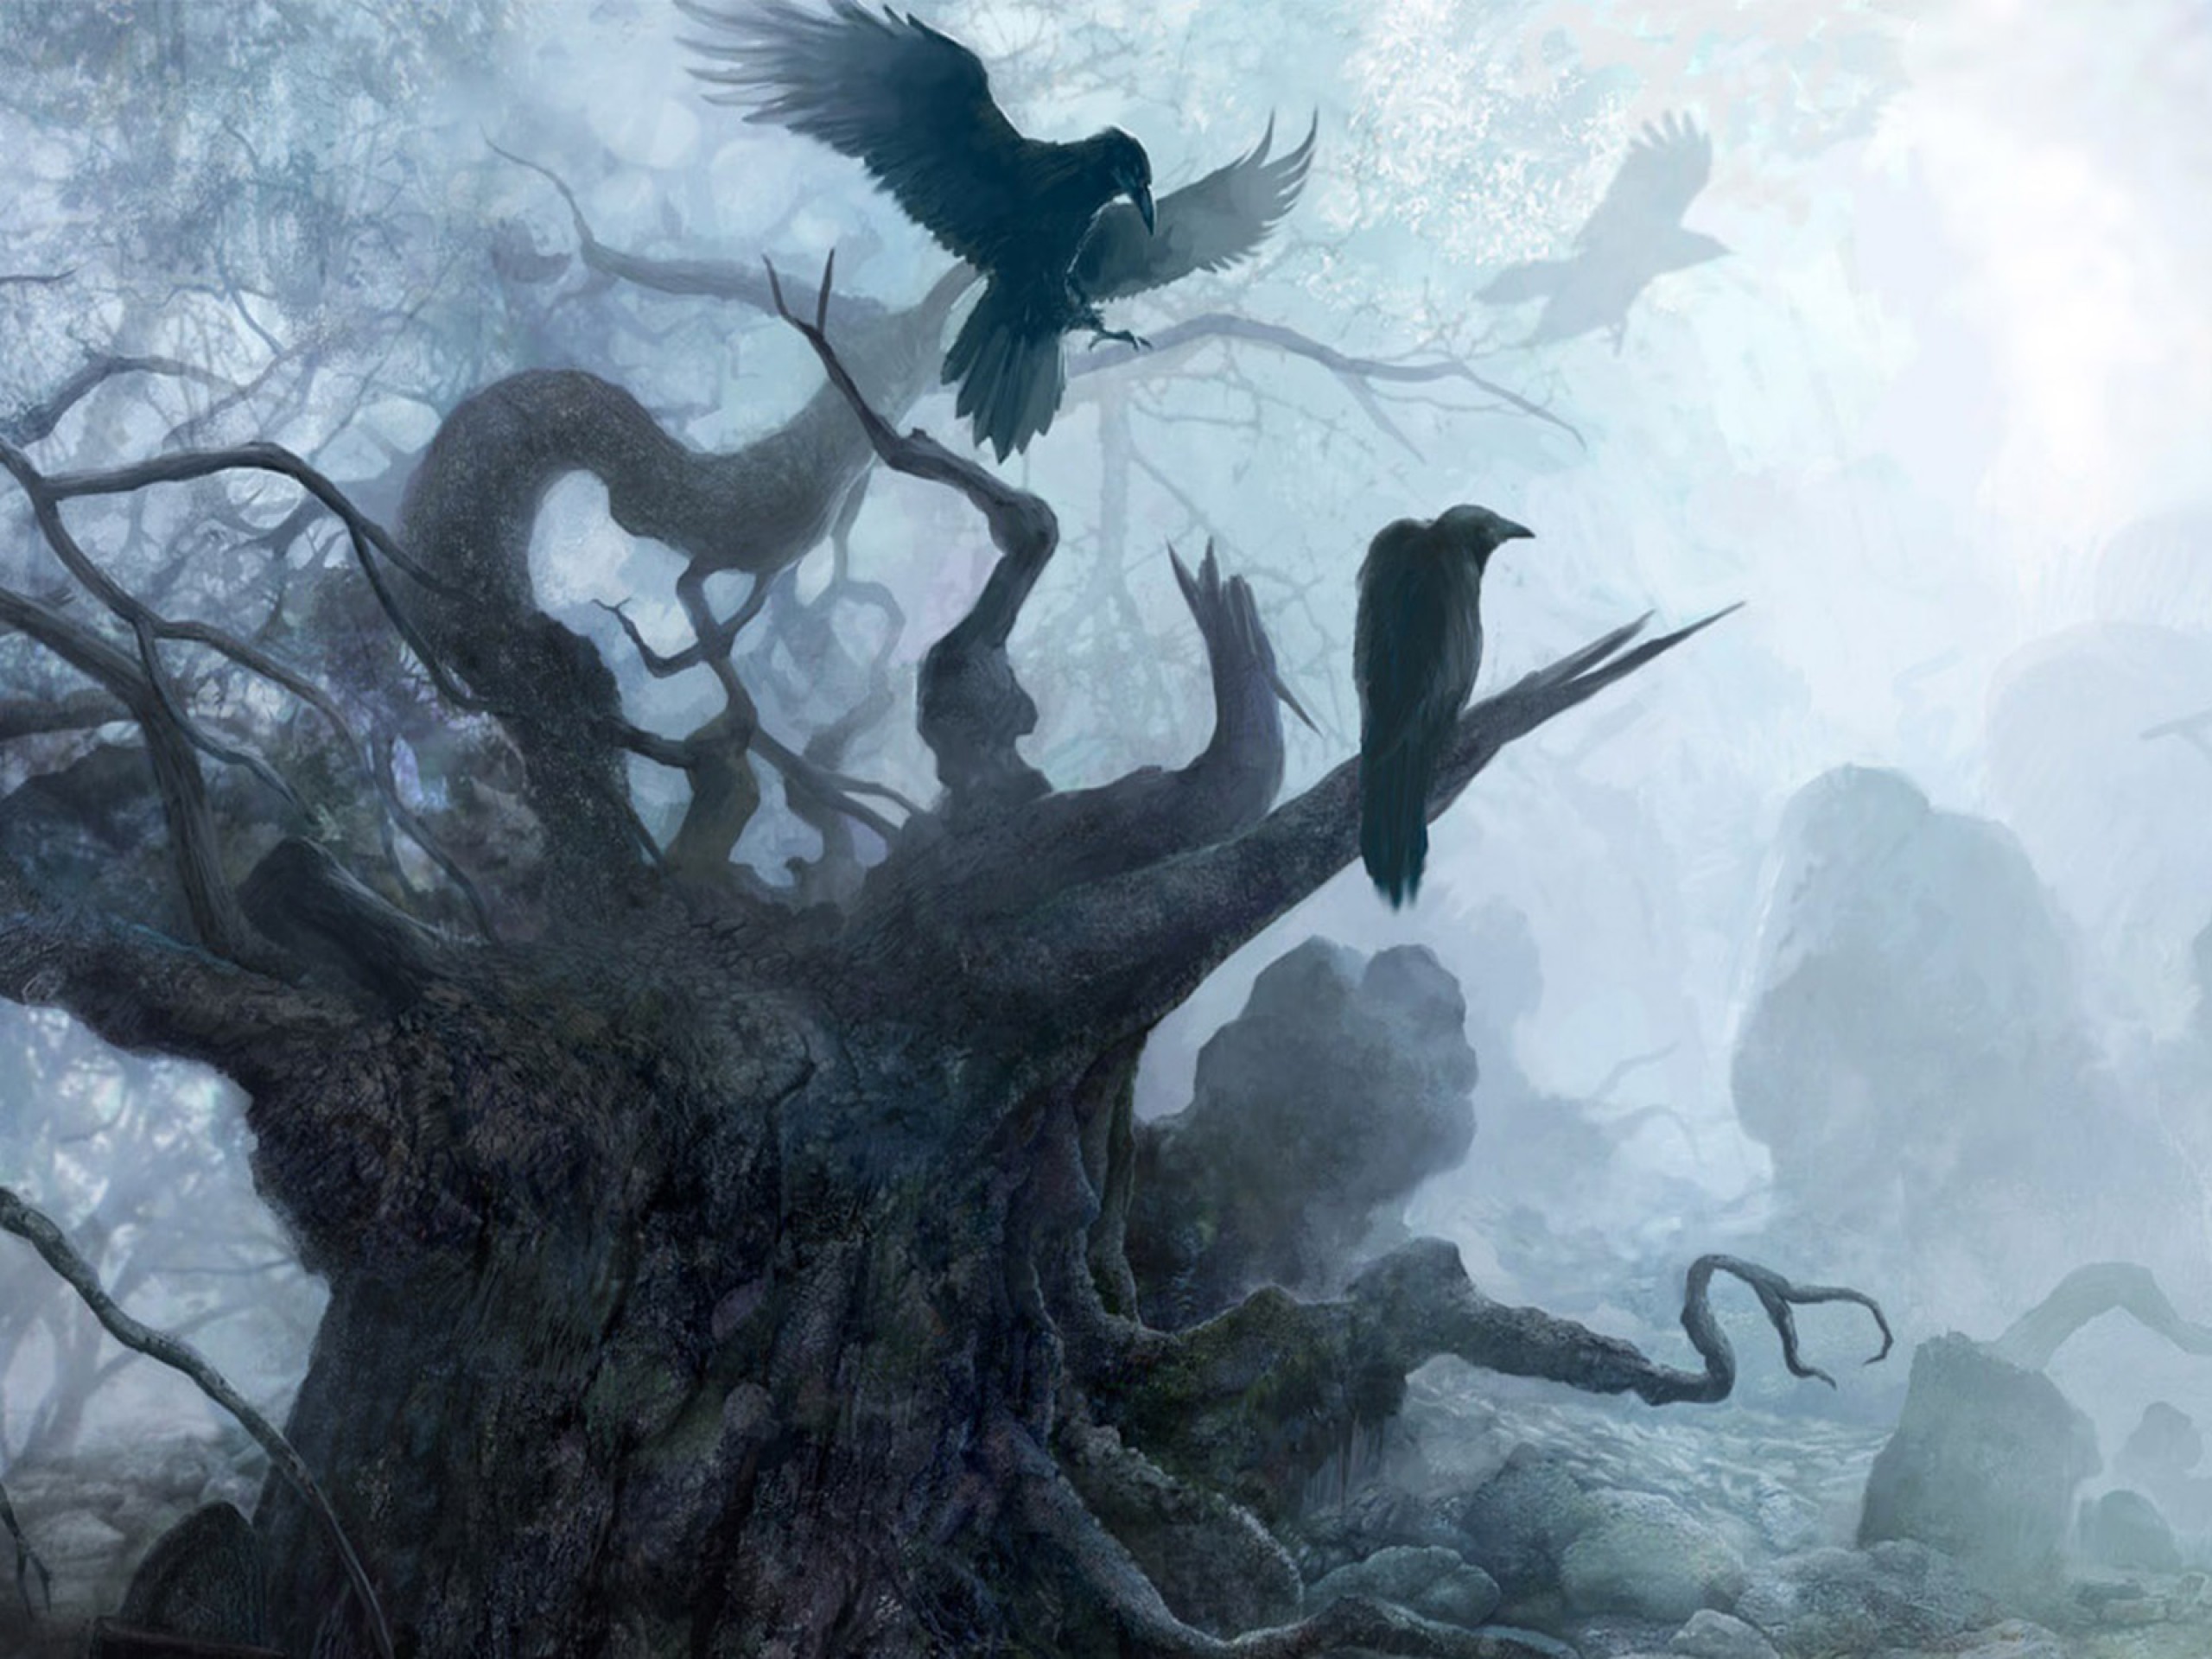 The Witcher Fantasy Dark Raven Death Gothic Halloween F Wallpaper 2560x1920 152066 Wallpaperup 2560x1920